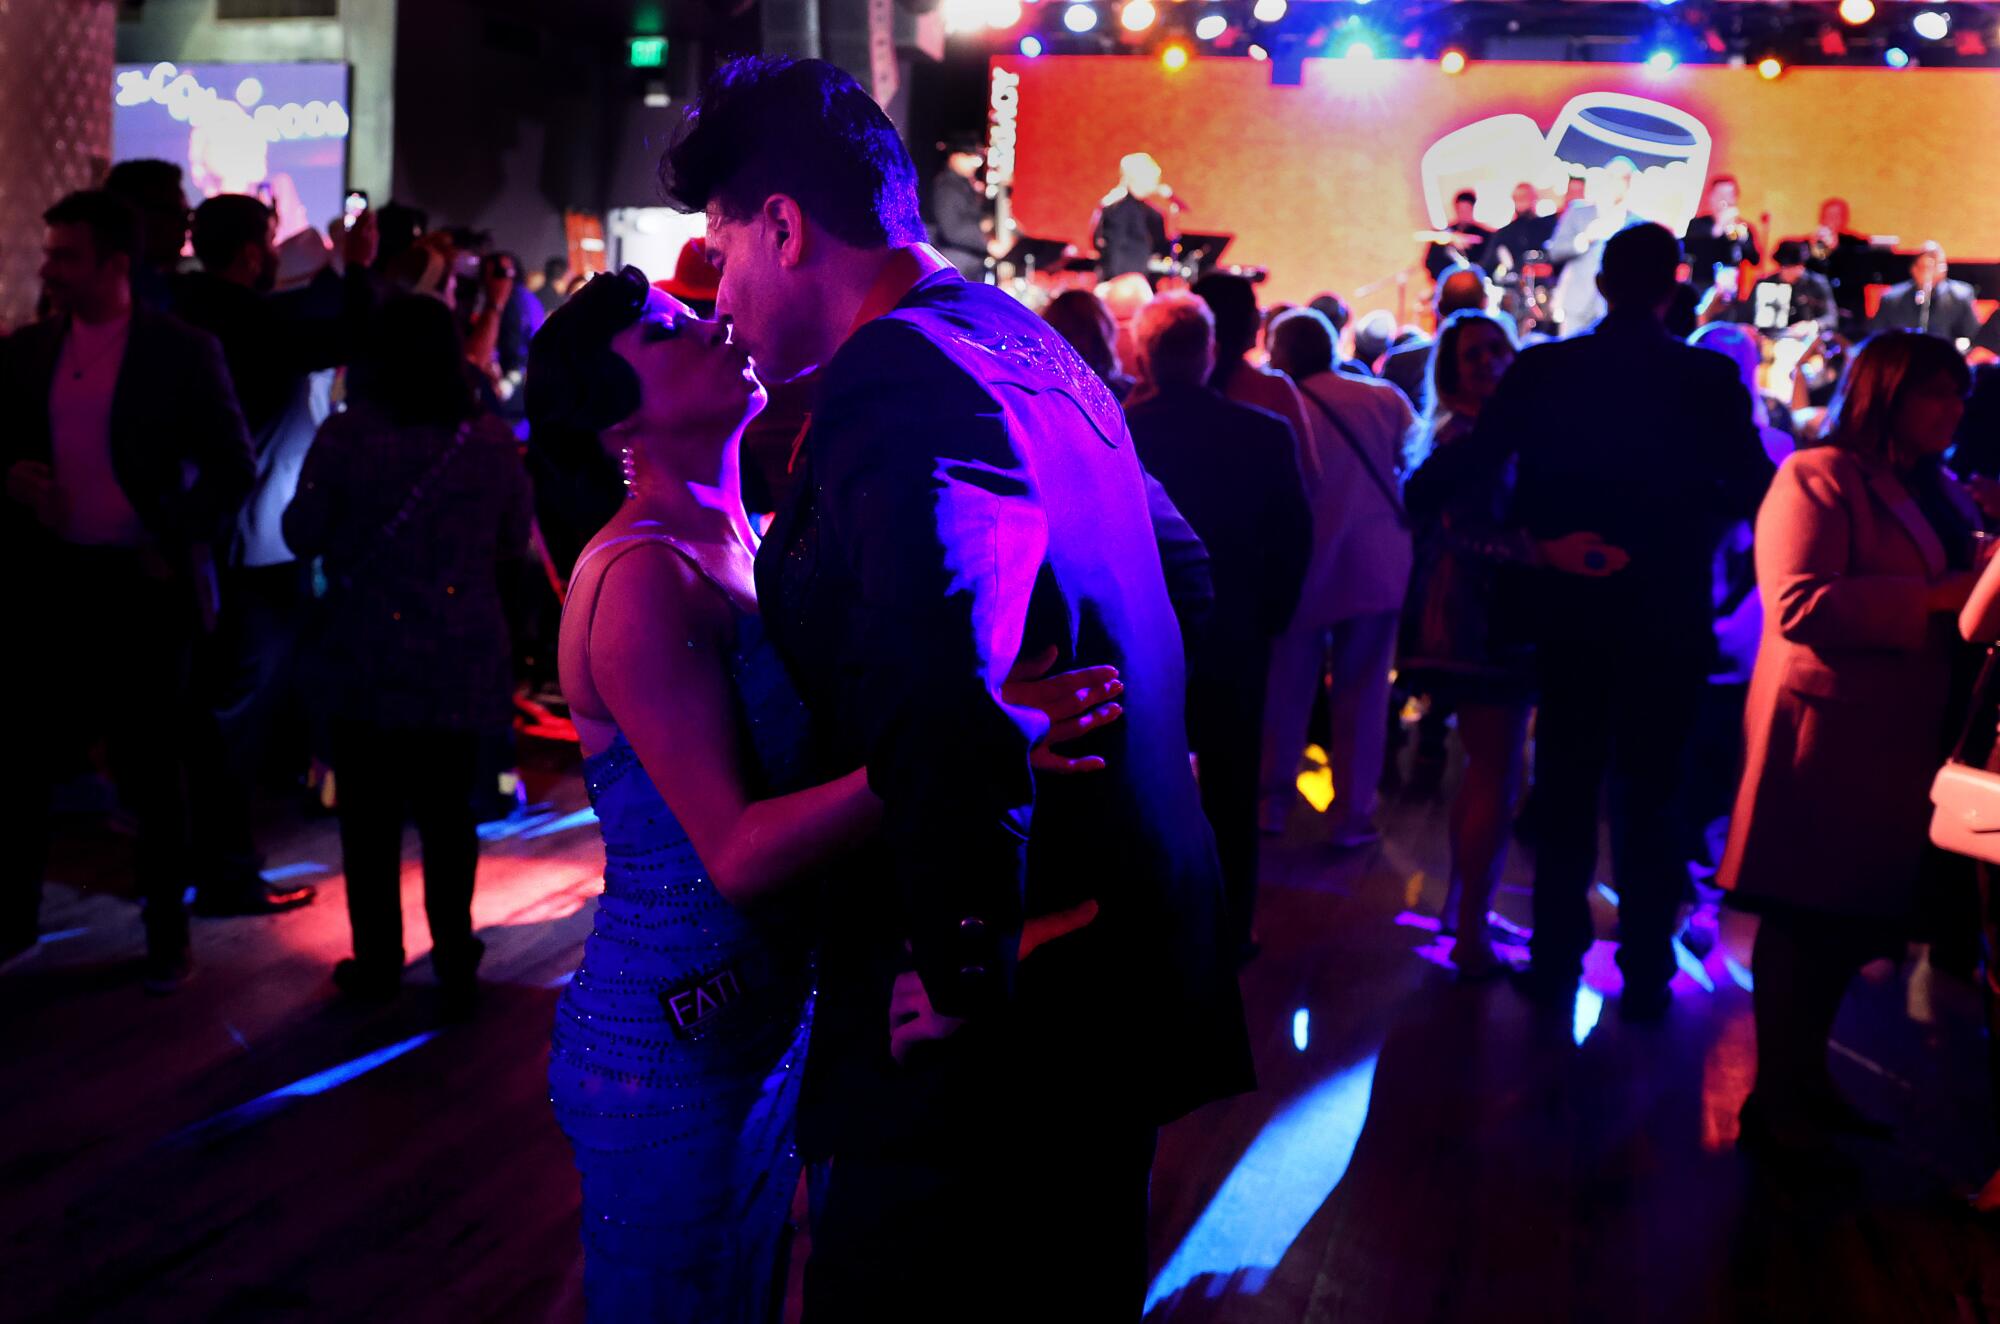 Tänzer küssen sich auf der Tanzfläche.